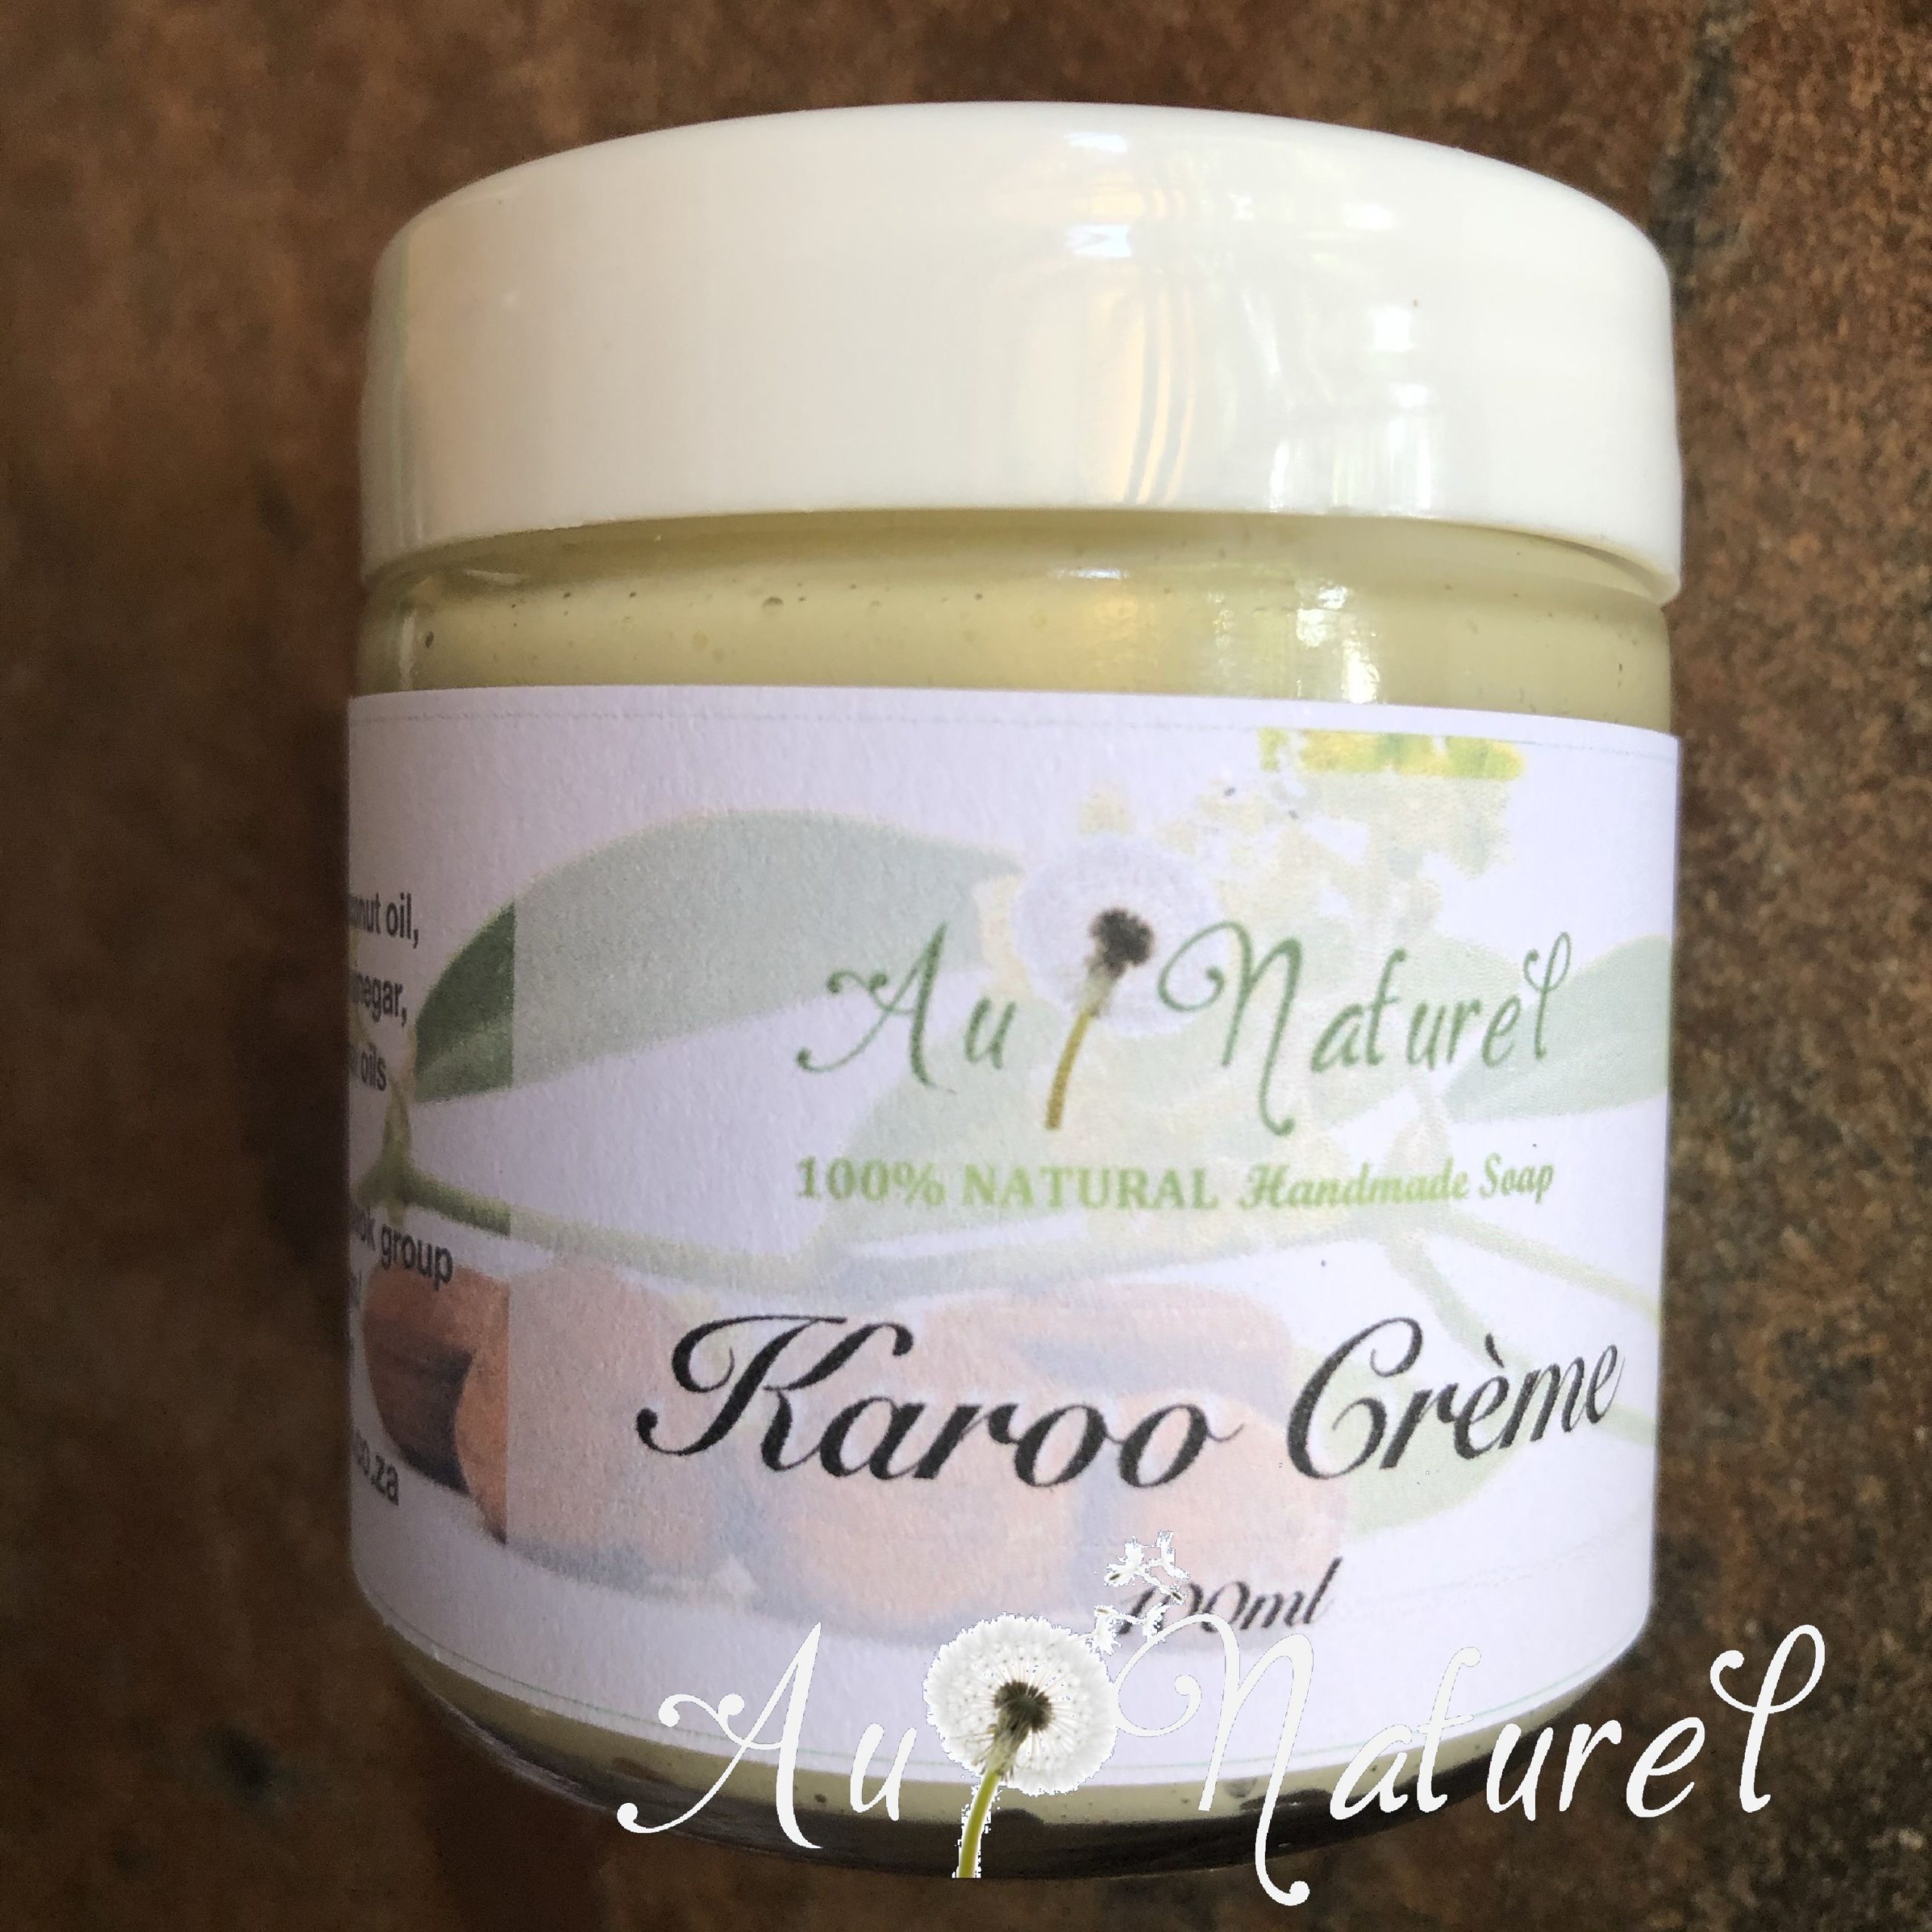 Karoo CrÃ¨me 2A-2C natural hair care